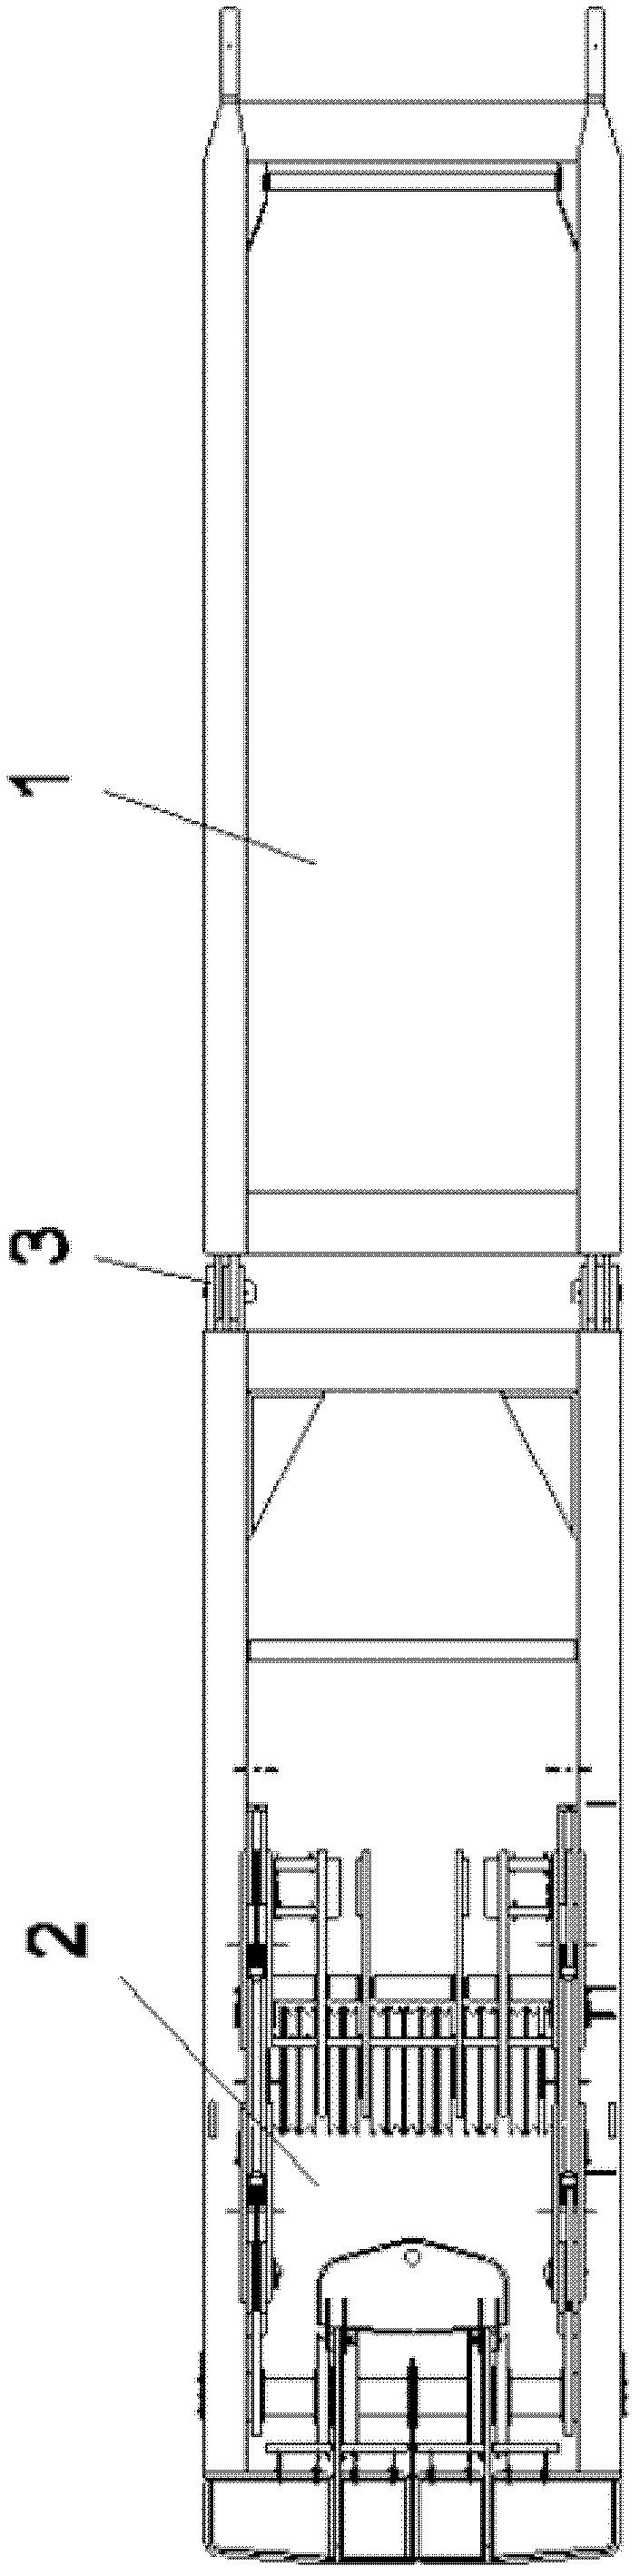 Main amplitude mast of crawler crane and crane comprising mast